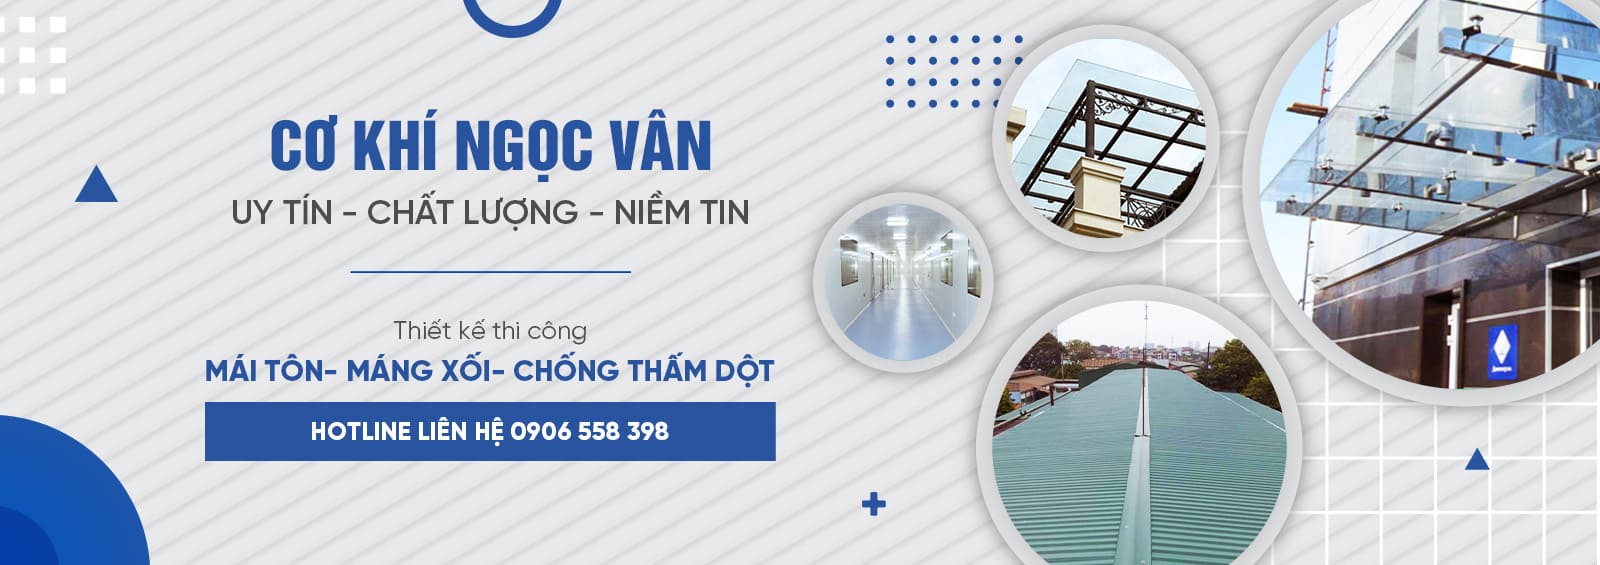 Cơ khí Ngọc Vân - Đơn vị chuyên thi công, sửa chữa mái tôn tại Hà Nội